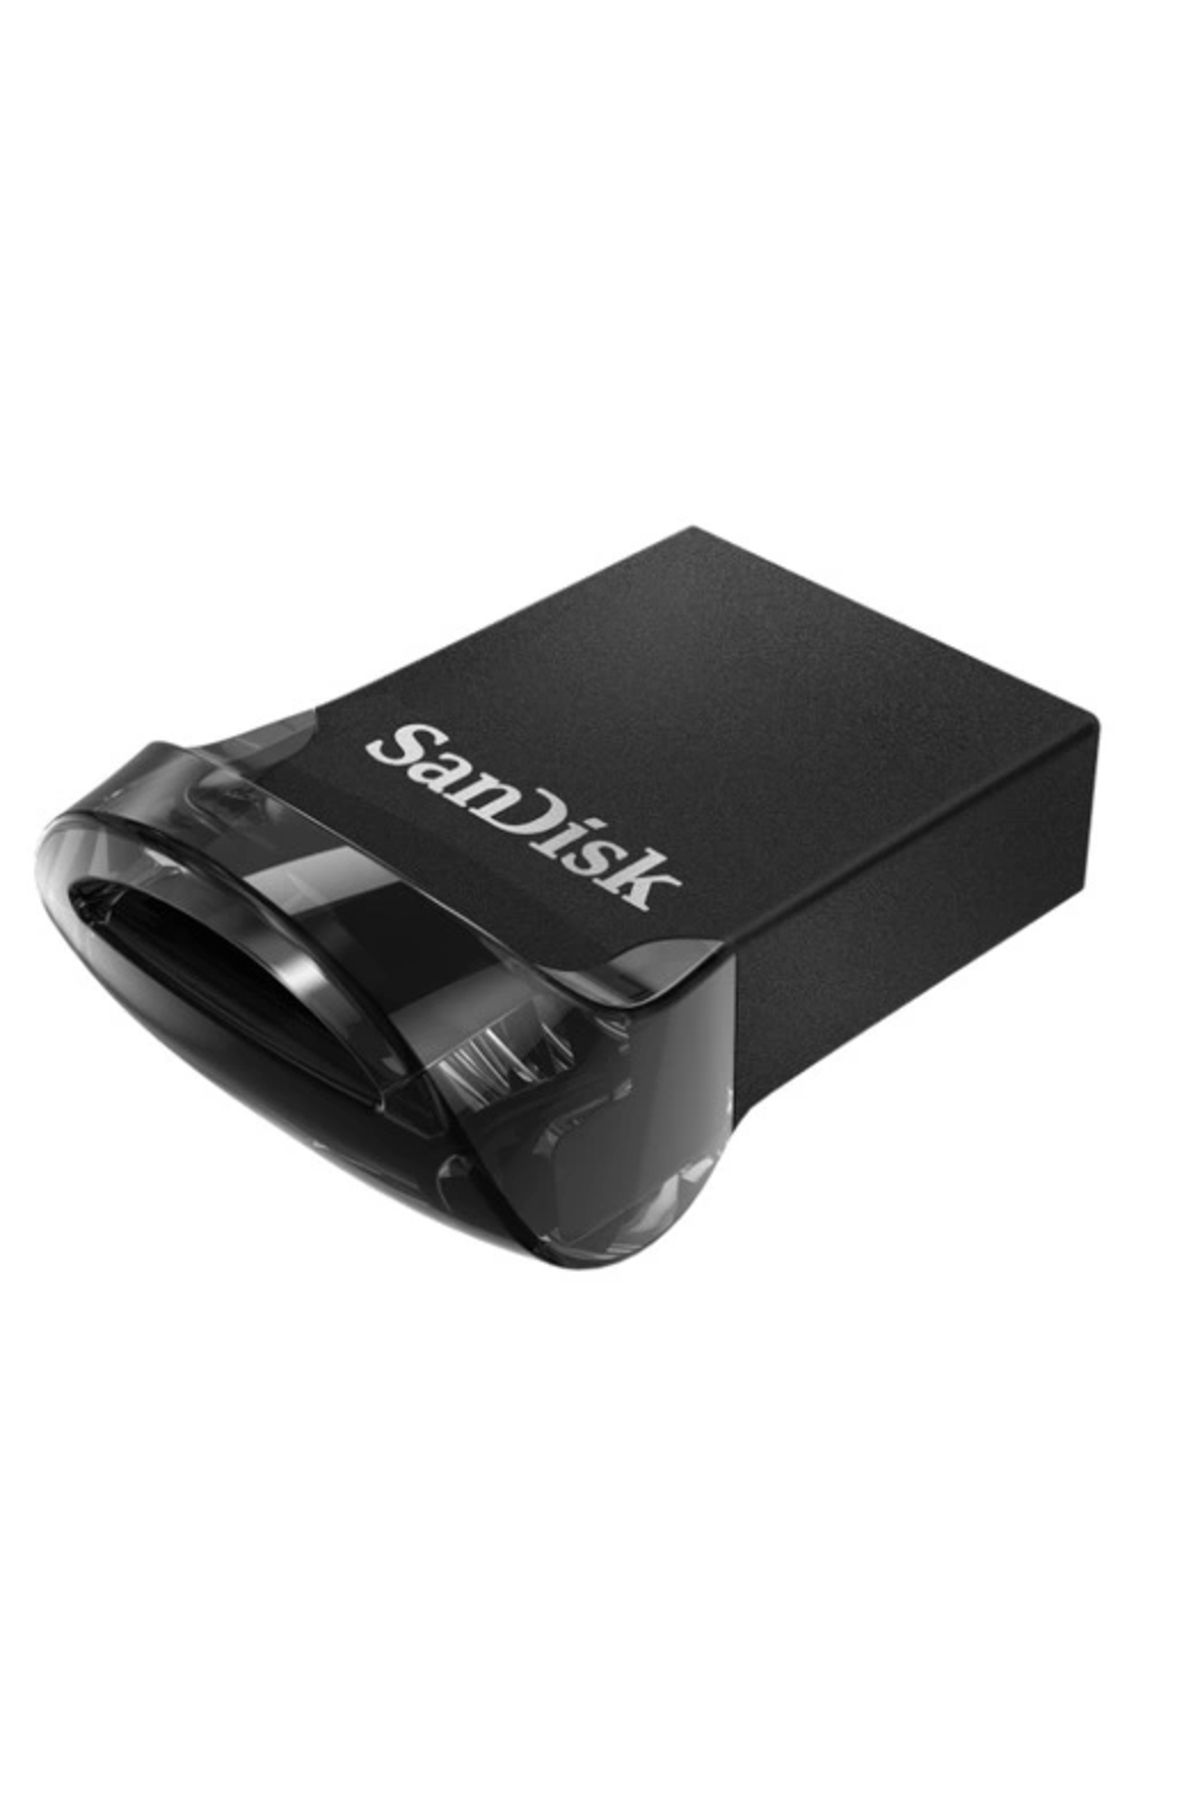 Sandisk Ultra Fit™ Usb 3.1 32gb - Small Form Factor Plug Stay Hi-speed Usb Drive